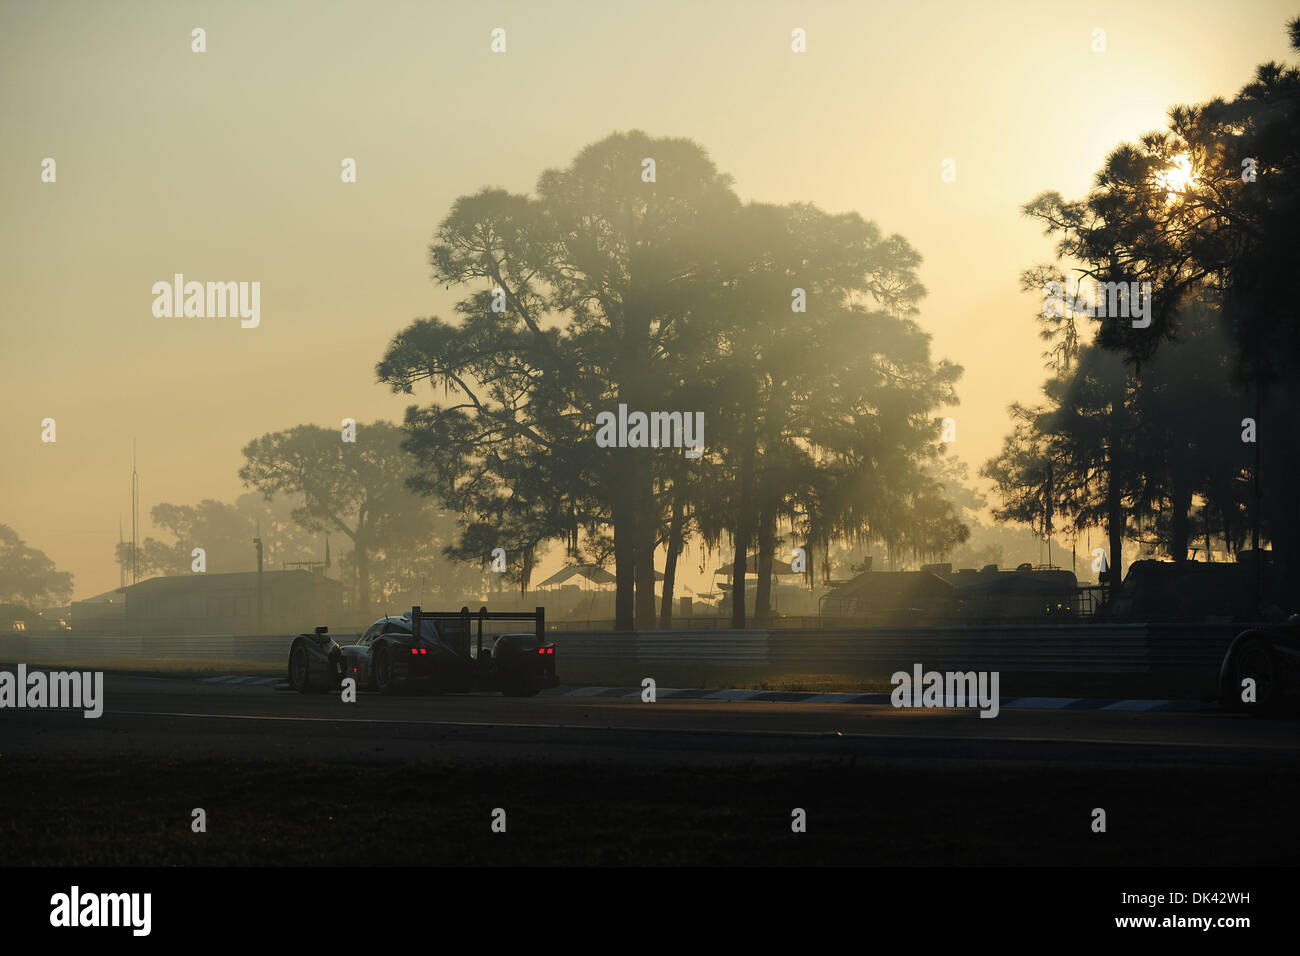 Mar 19, 2011 - Sebring, Floride, États-Unis - Peugeot pilote ANTHONY DAVIDSON, de l'Angleterre, les lecteurs de chauffe (908 pour les 12 heures de Sebring. (Crédit Image : © Rainier Ehrhardt/ZUMApress.com) Banque D'Images